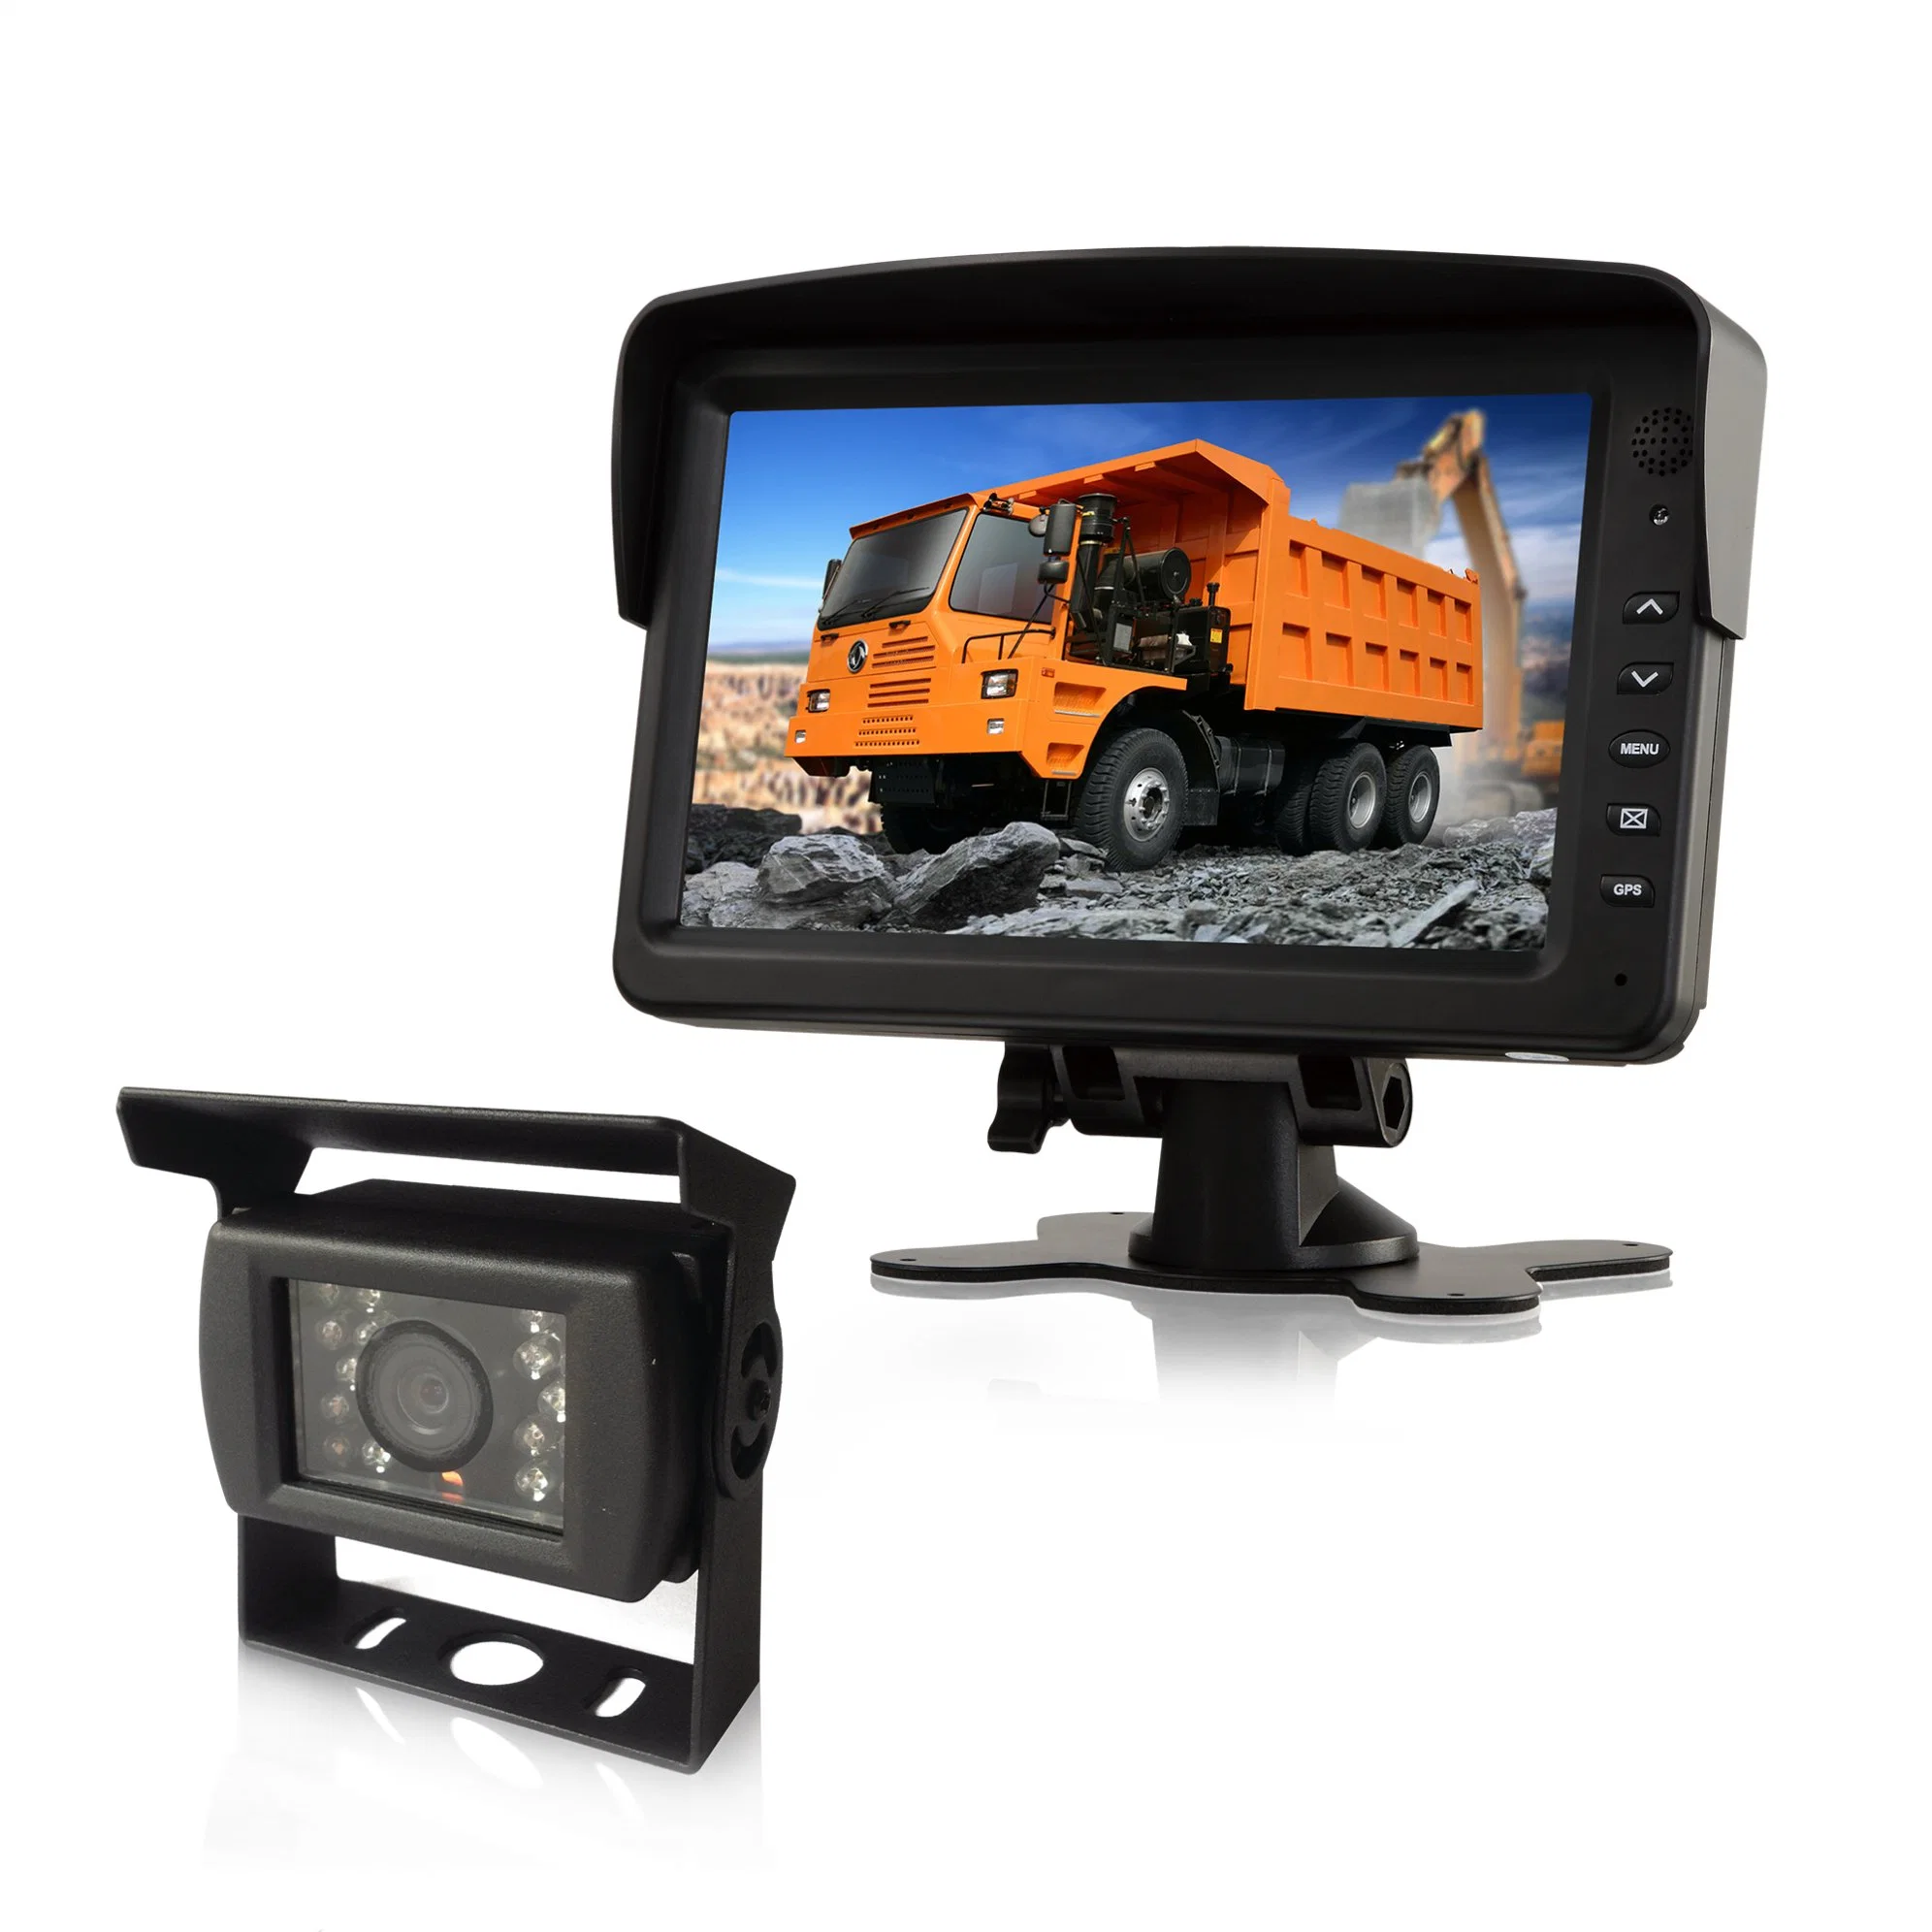 شاشة عرض سيارة بشاشة عرض بحجم 7 بوصات من طراز Dash Mount مزودة بثلاثة مقاطع فيديو مداخل لدقة شاشة TFT LCD 800*480 للمساعدة في الرجوع إلى الخلف